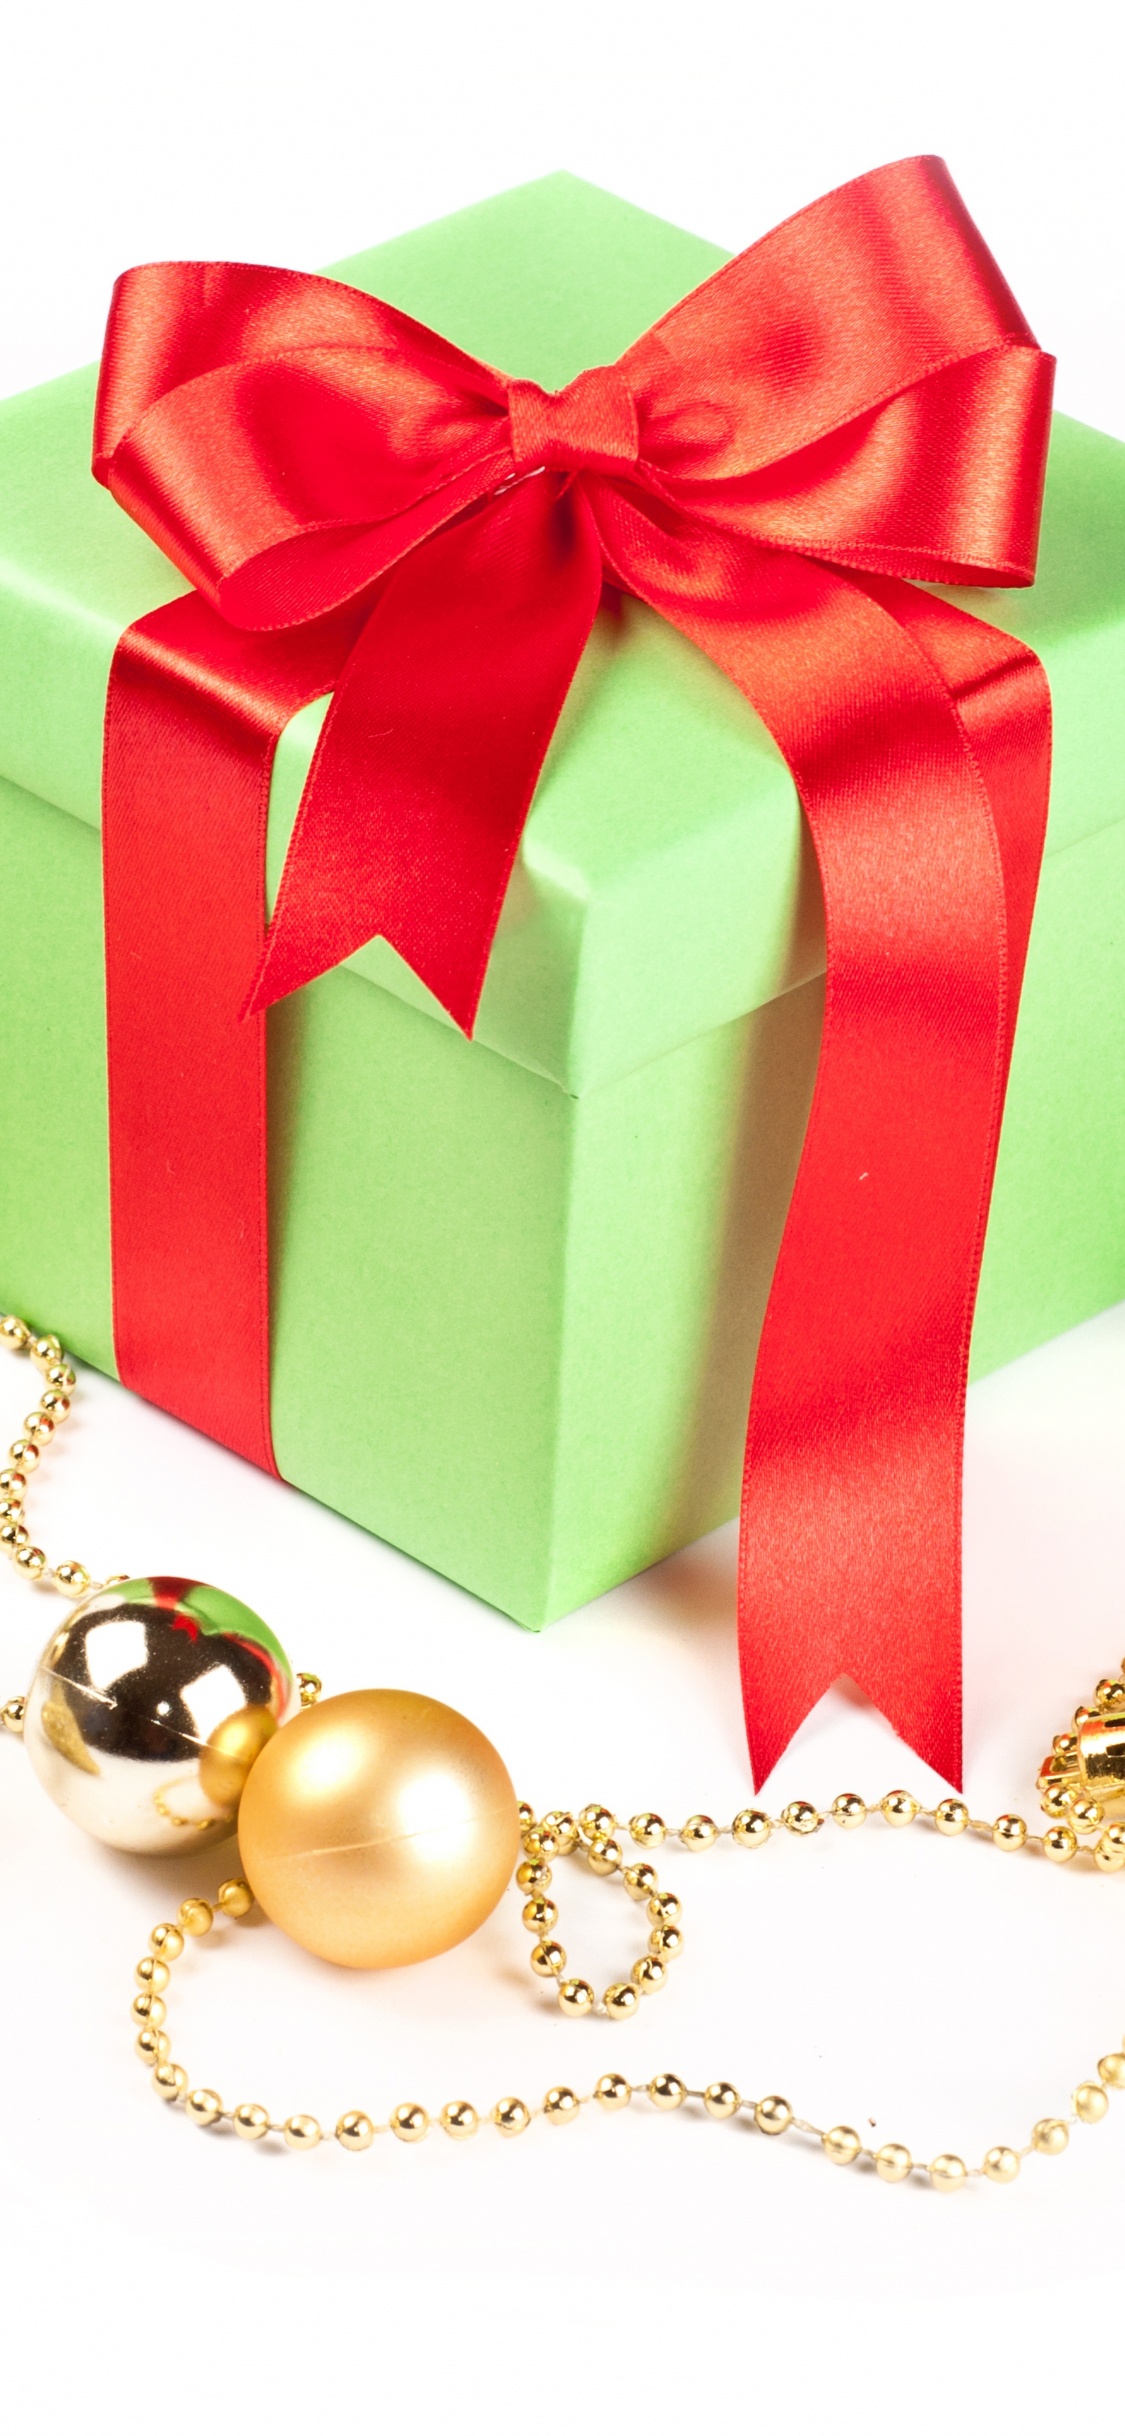 圣诞节的装饰品, 礼物, 圣诞节那天, 新的一年, 礼品包装 壁纸 1125x2436 允许